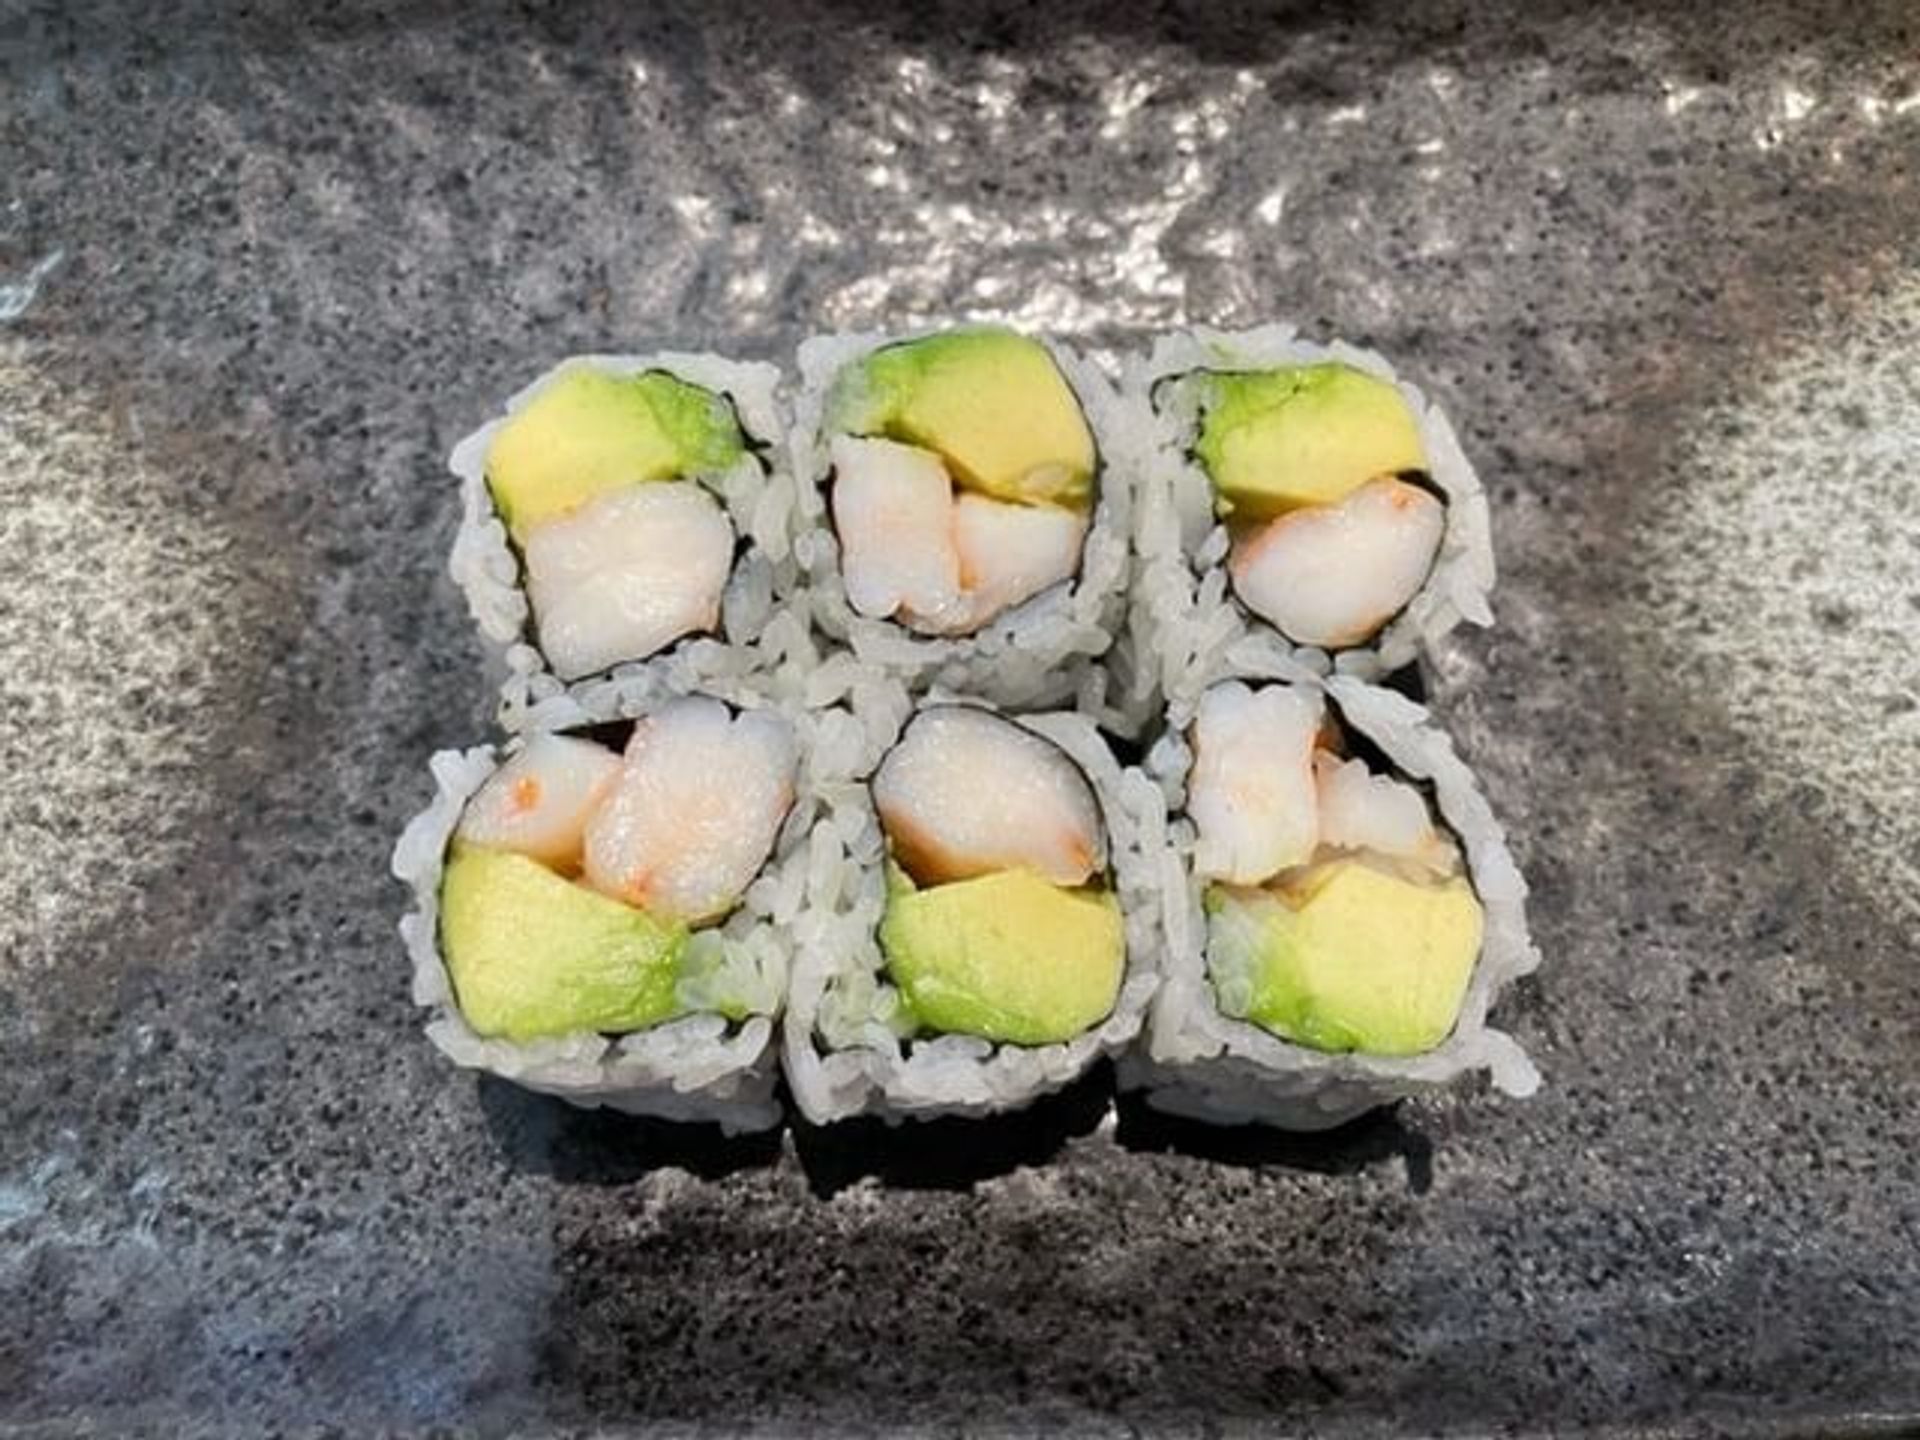 Shrimp Avocado Roll